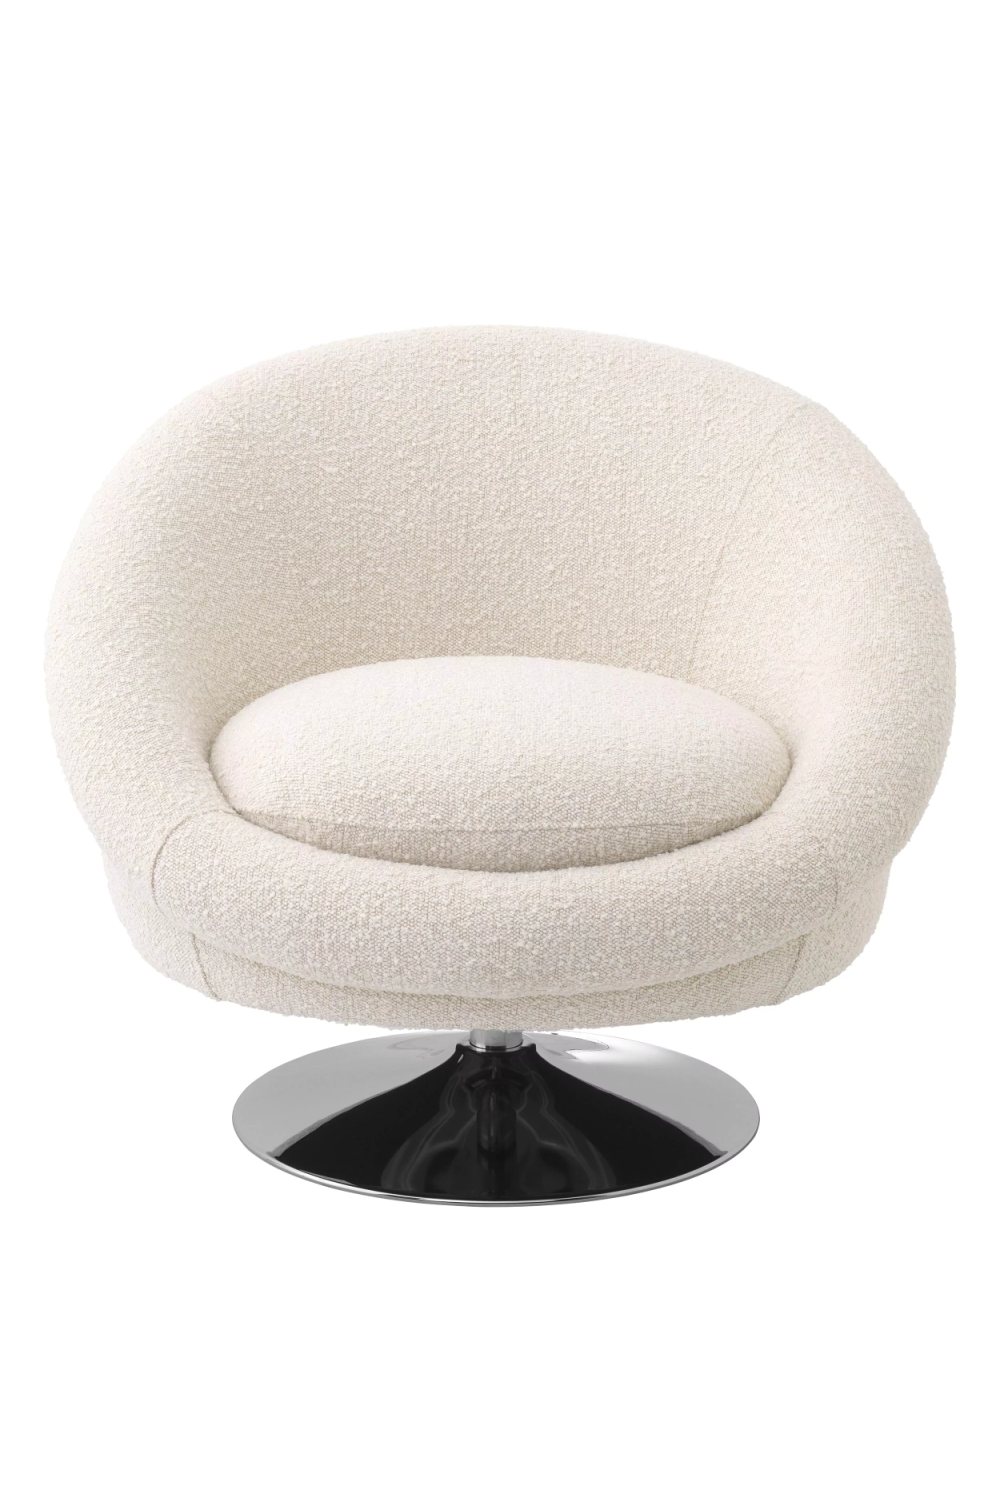 Cream Bouclé Swivel Tub Chair | Eichholtz Nemo | Oroa.com